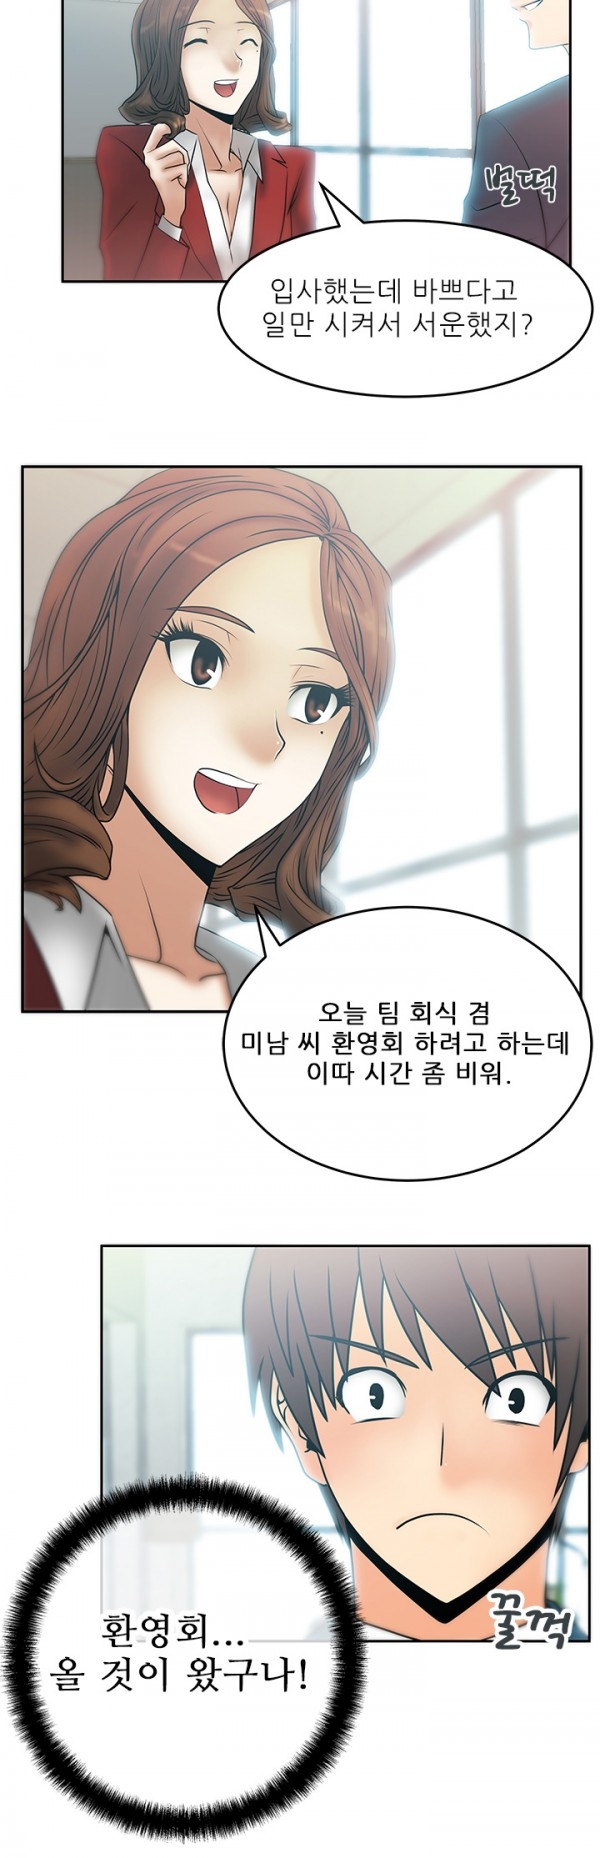 [Minu Mindu] Office Lady Vol. 1 [Korean] 92